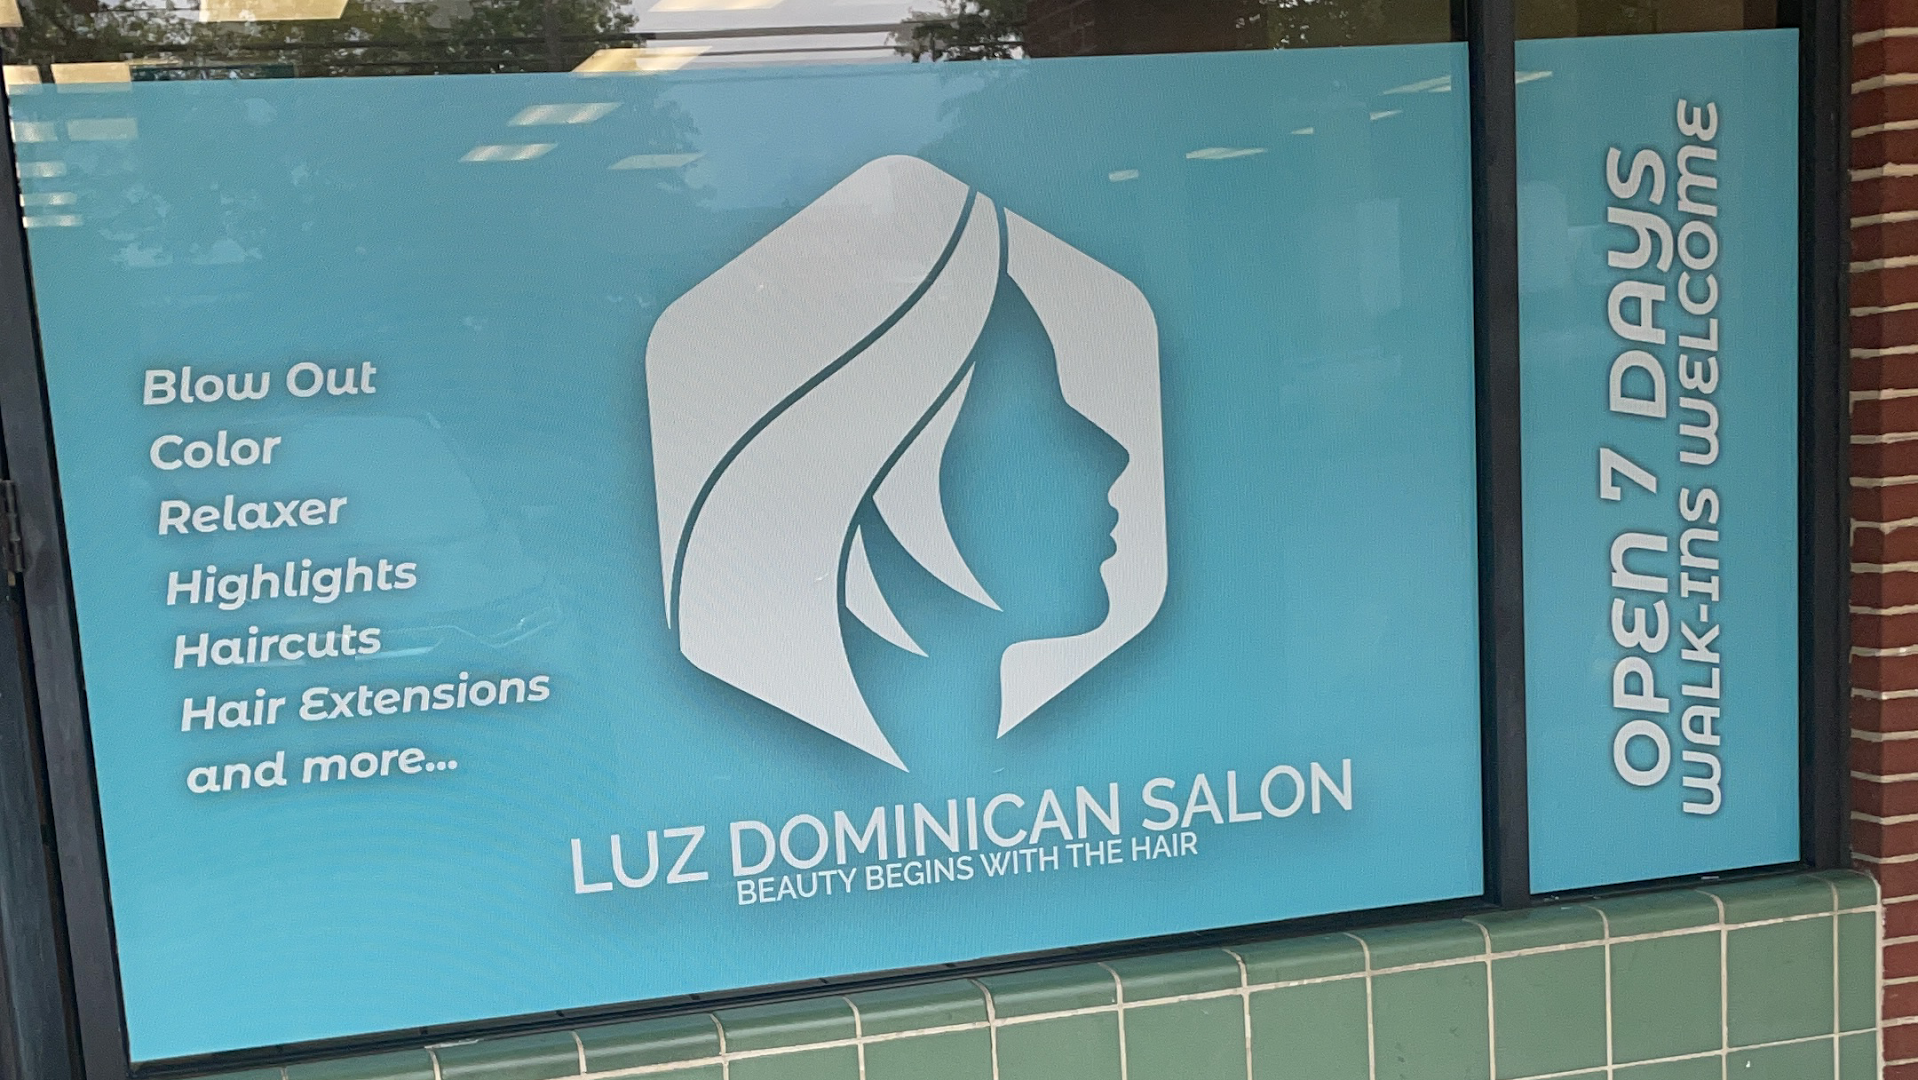 Luz Dominican Salon